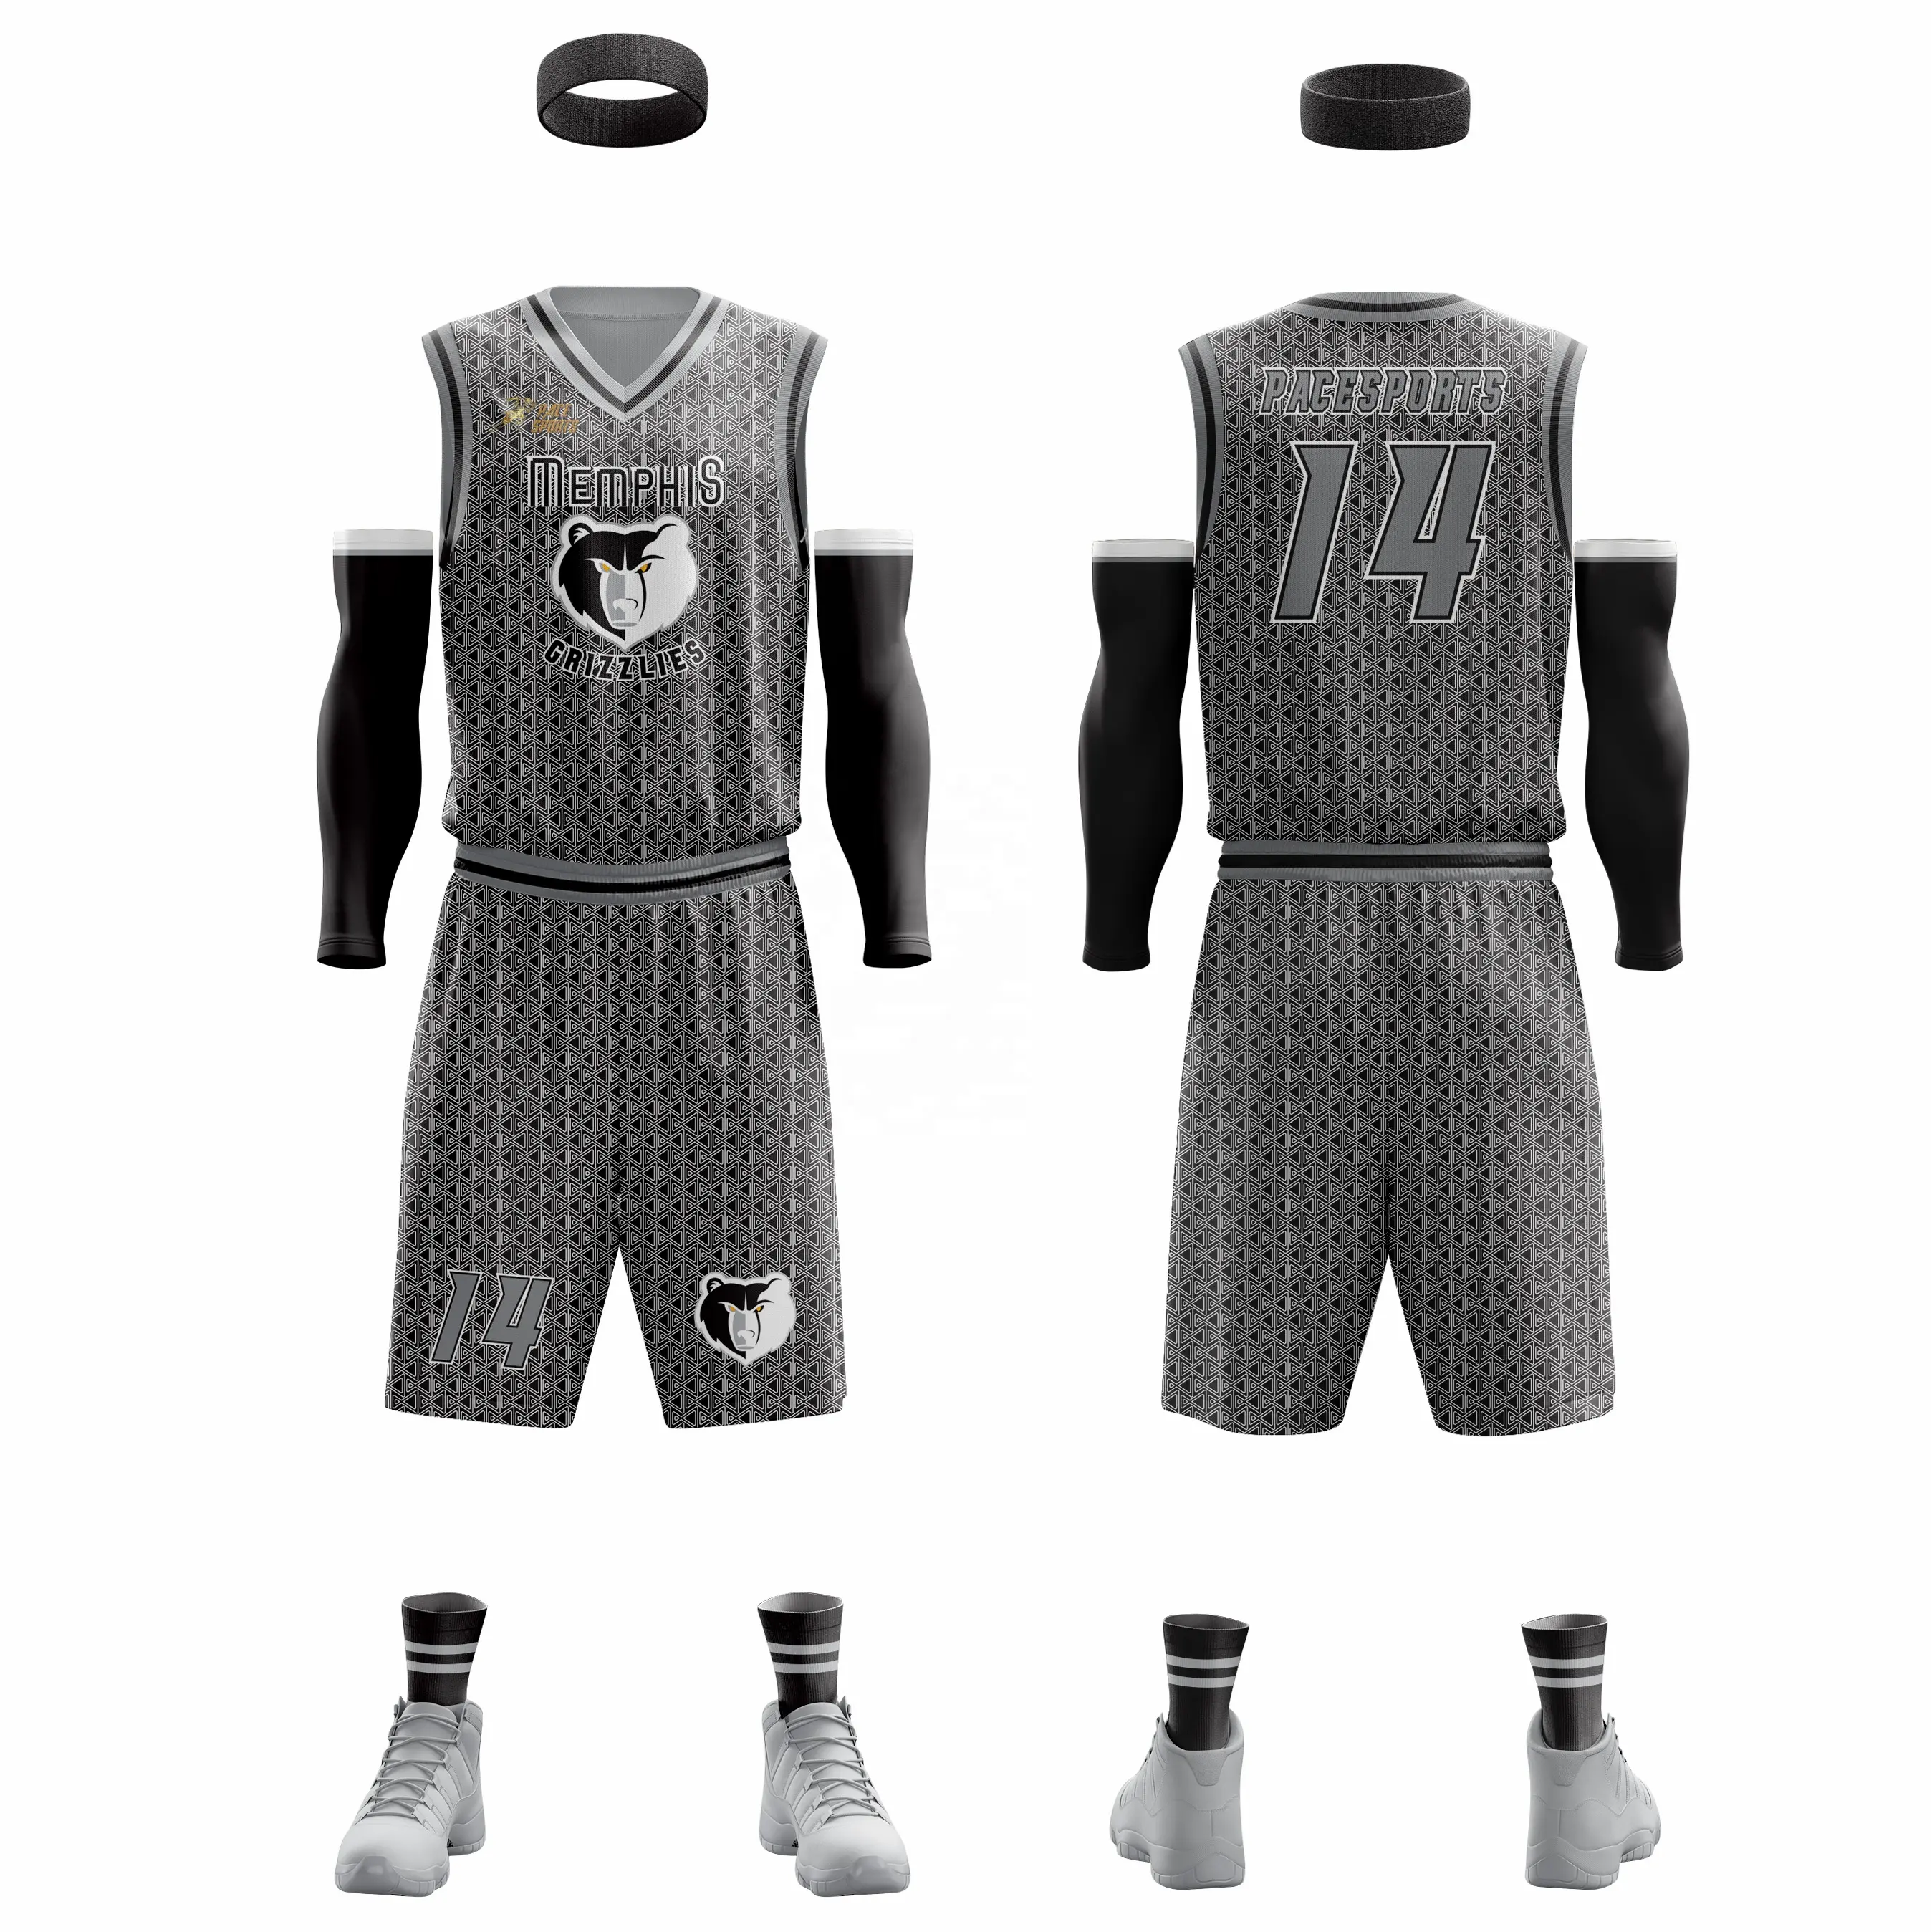 Vente en gros pas cher 100% tissus en polyester logo de haute qualité USA pour hommes maillots uniformes de basket-ball réversibles sublimés